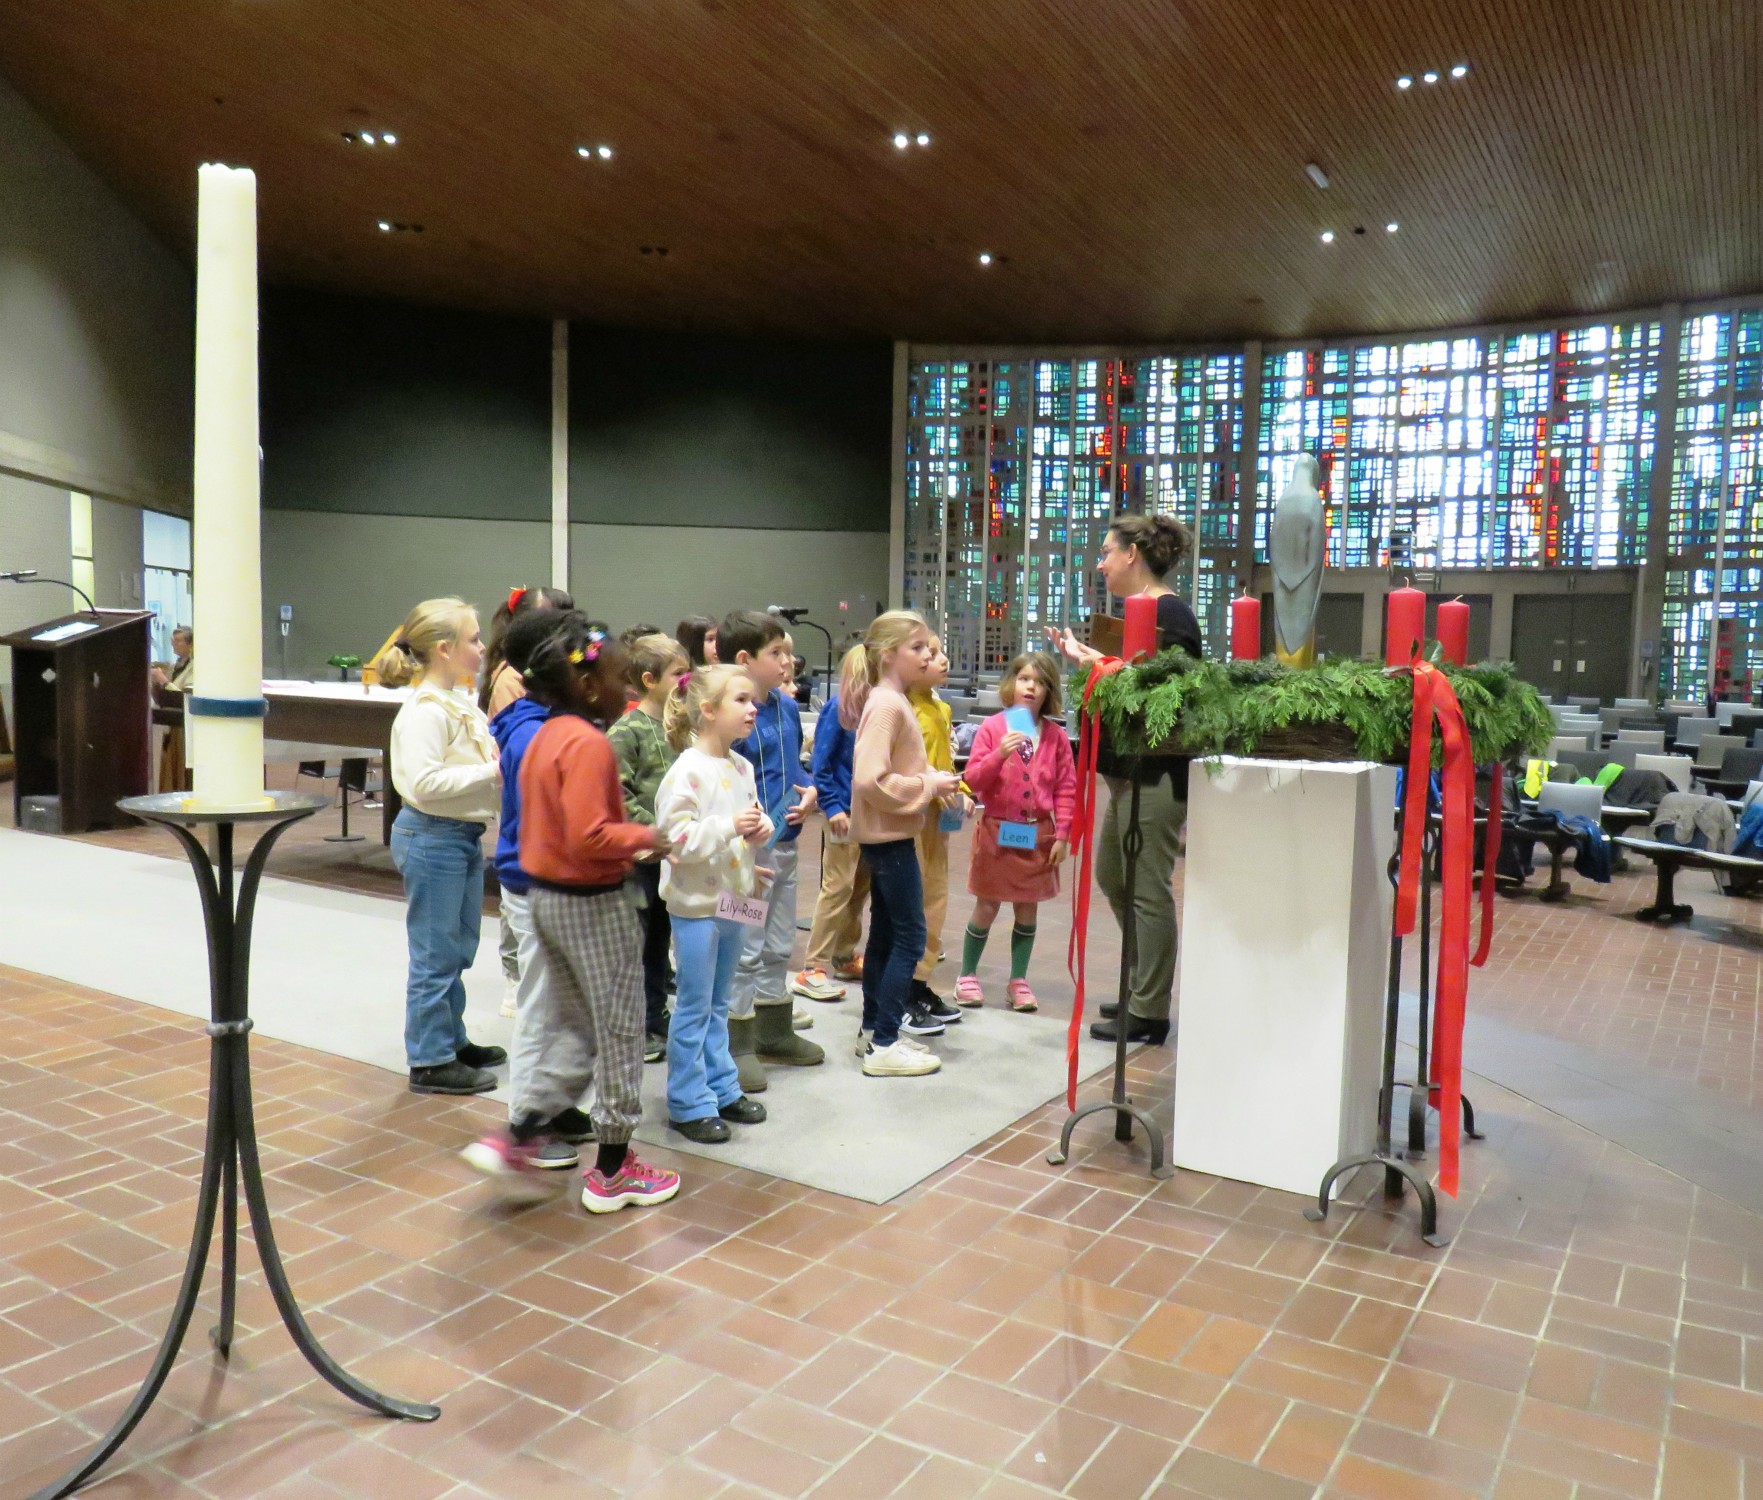 Catechesebijeenkomst 2 | Bezoek aan de kerk | Eerste communicanten 2024 | Sint-Anna-ten-Drieënkerk, Antwerpen Linkeroever